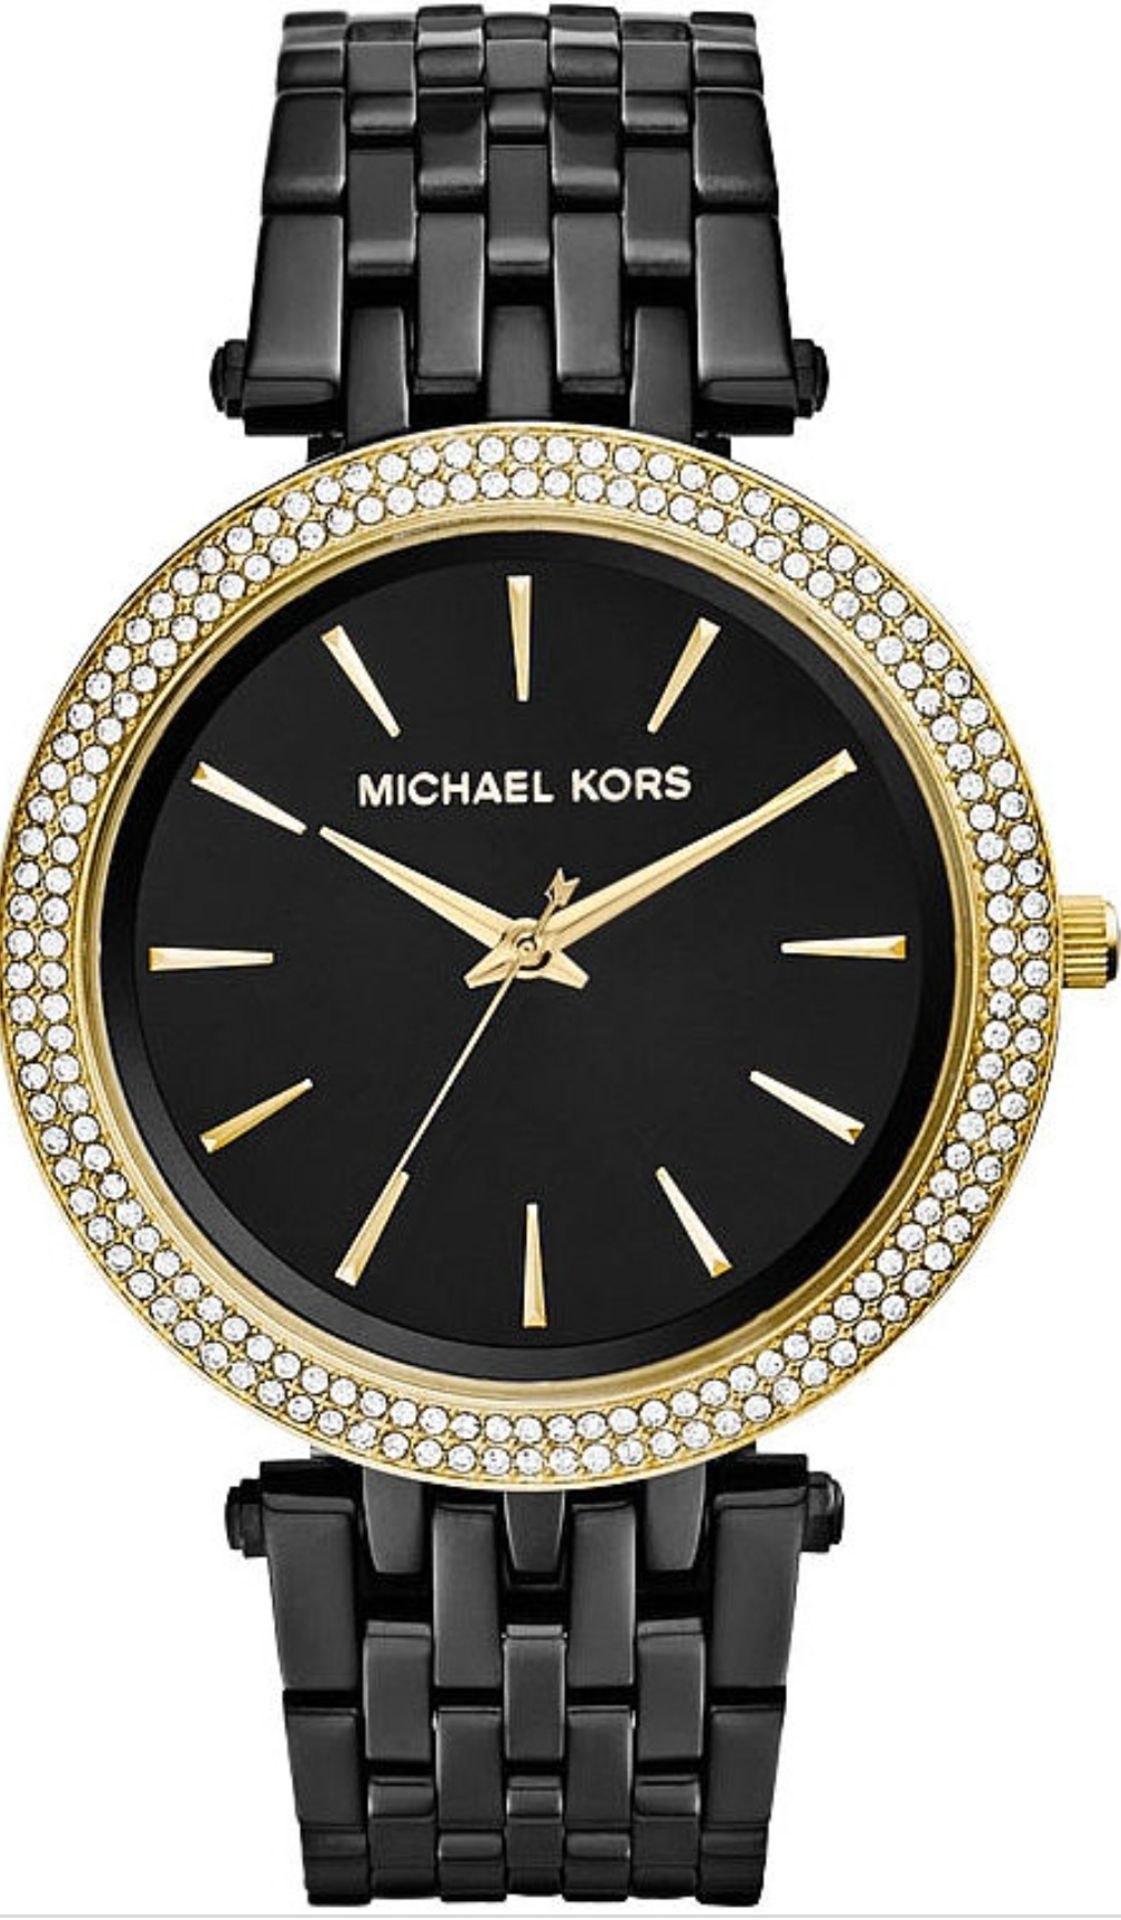 Michael Kors MK3322 Darci Gold & Black Stainless Steel Ladies Watch - Image 3 of 8